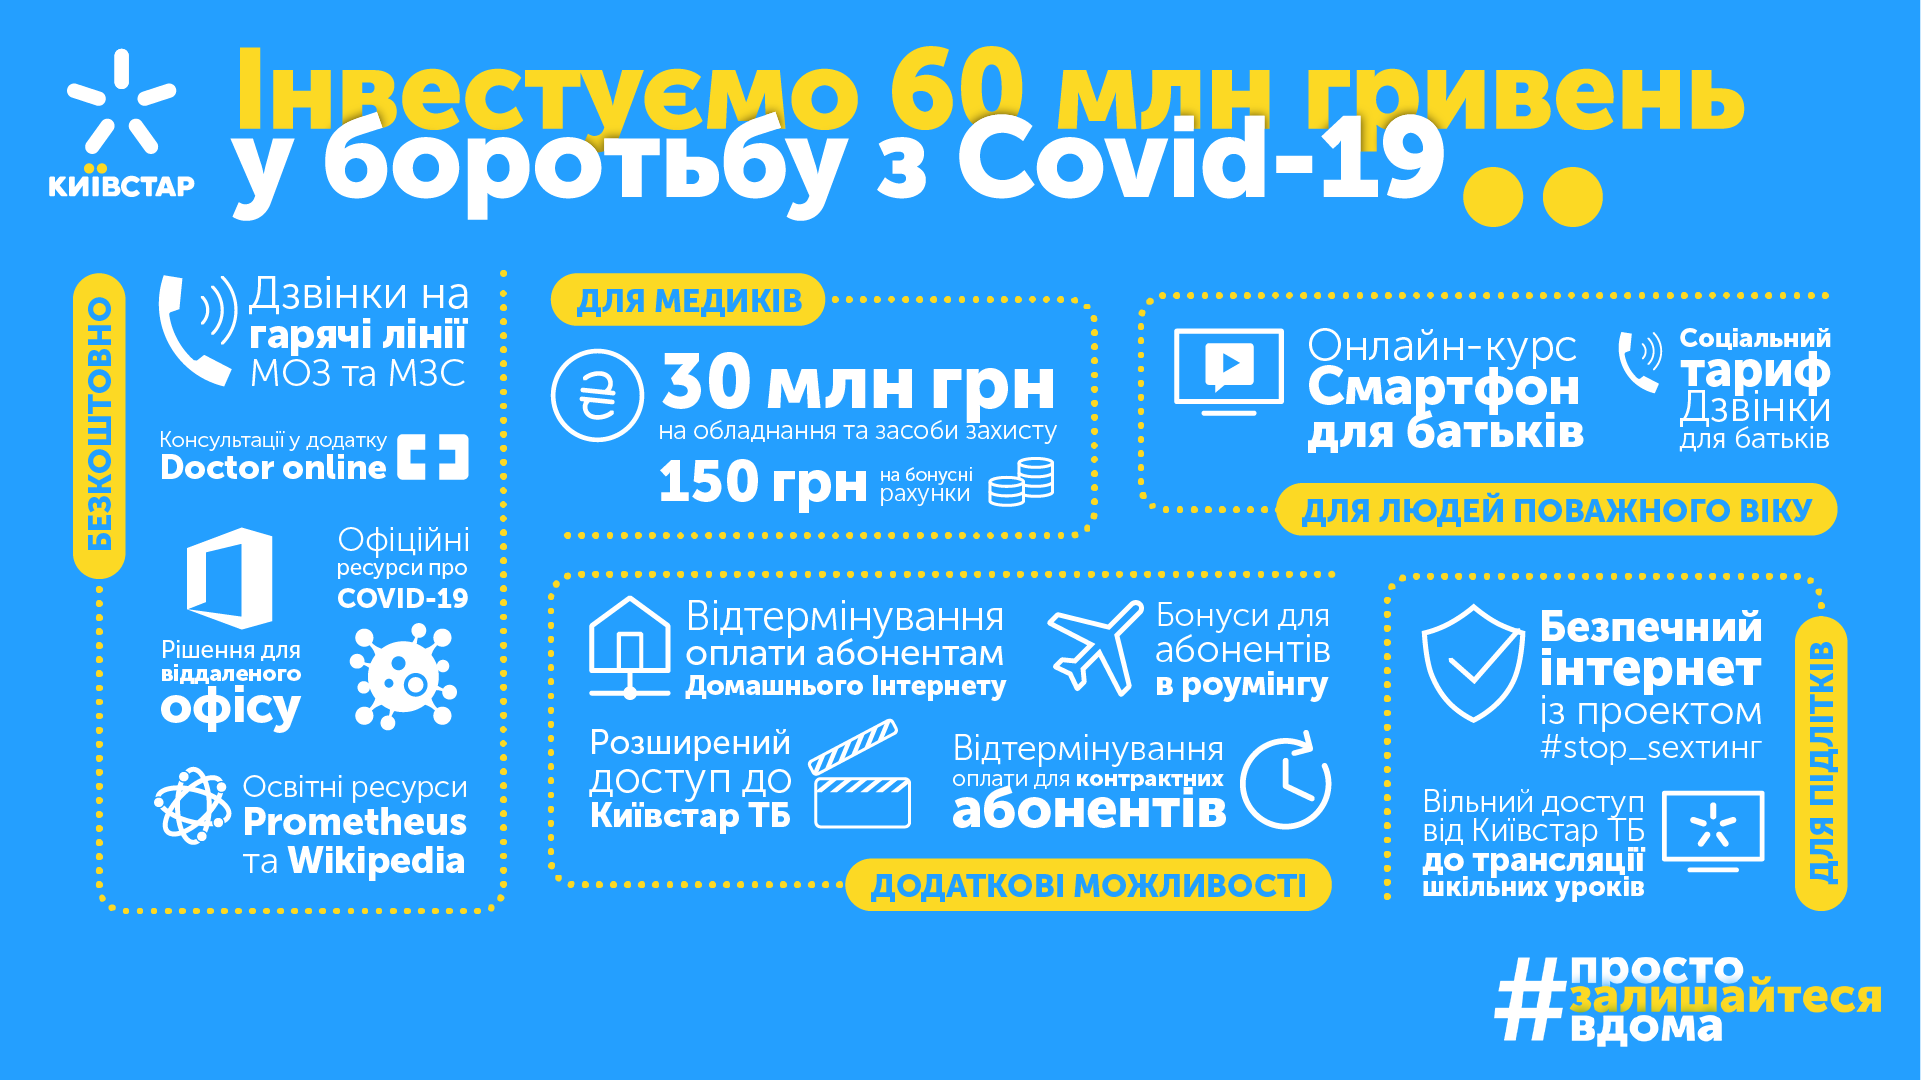 "Киевстар" выделил 60 млн грн на борьбу с COVID-19